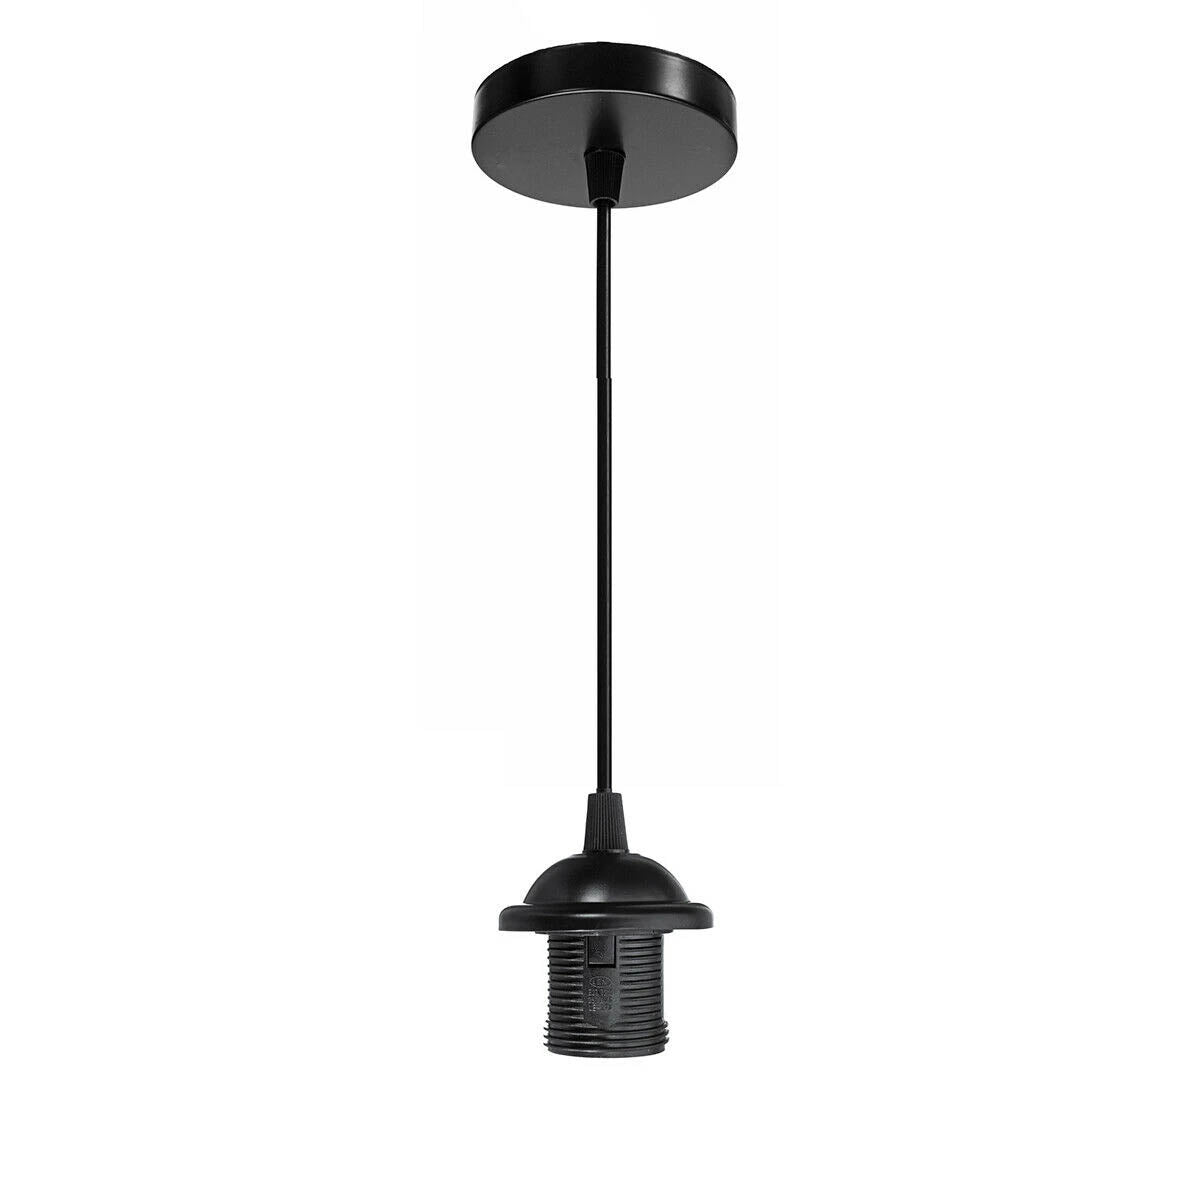 E27 Ceiling Rose Light PVC Black Umbrella Holder pendant light Lamp Holder Fitting~1357